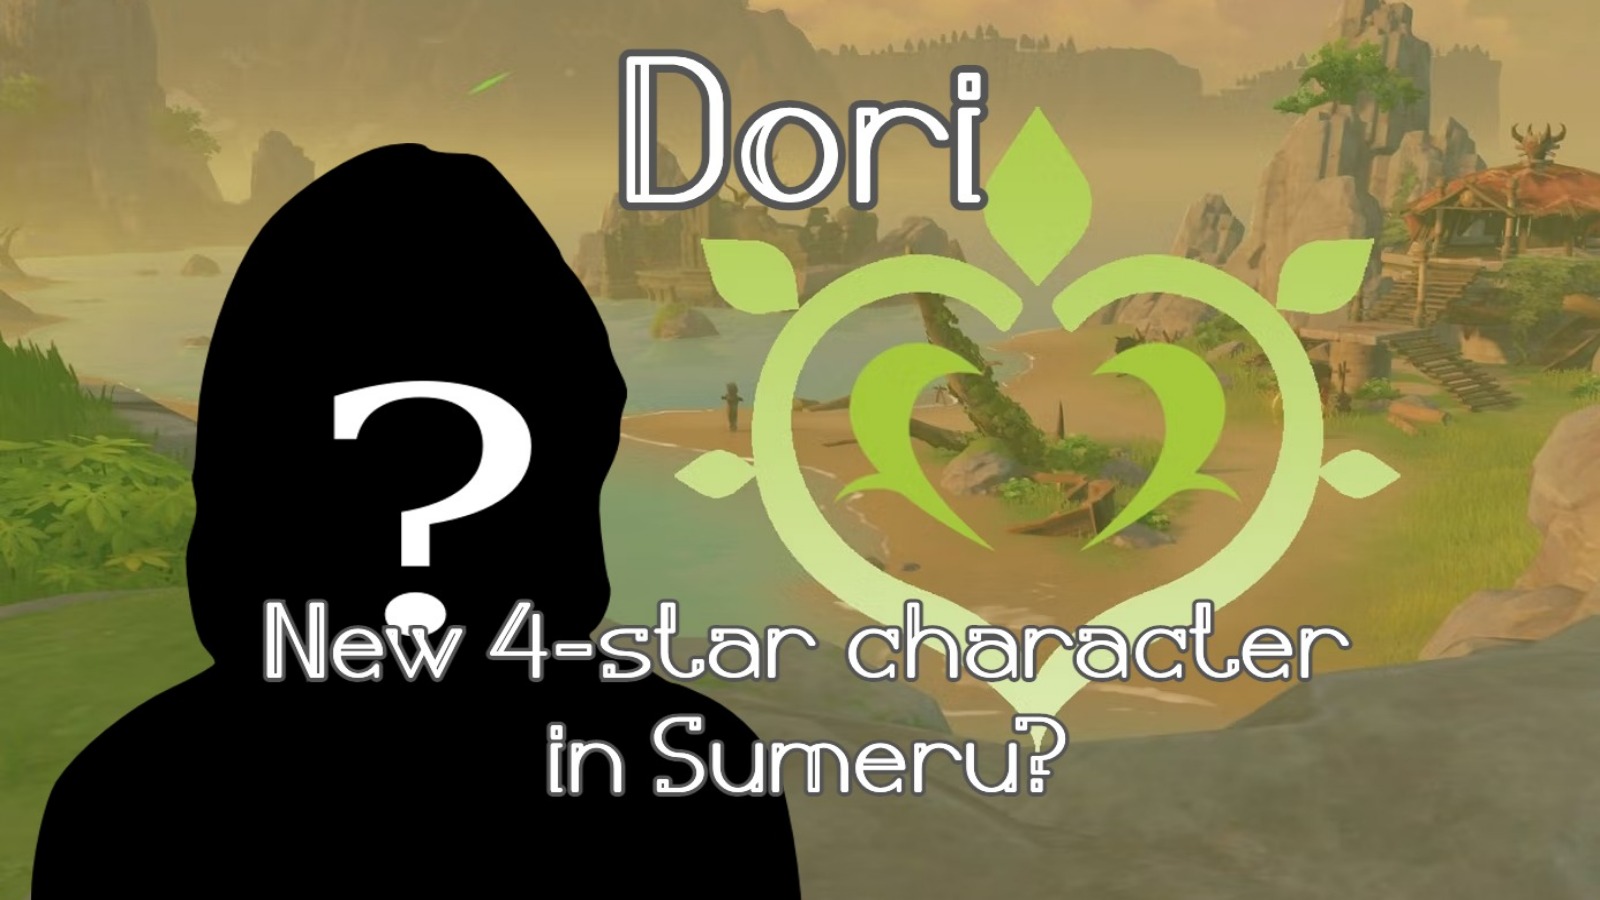 Genshin Impact New 4-star character in Sumeru- Dori